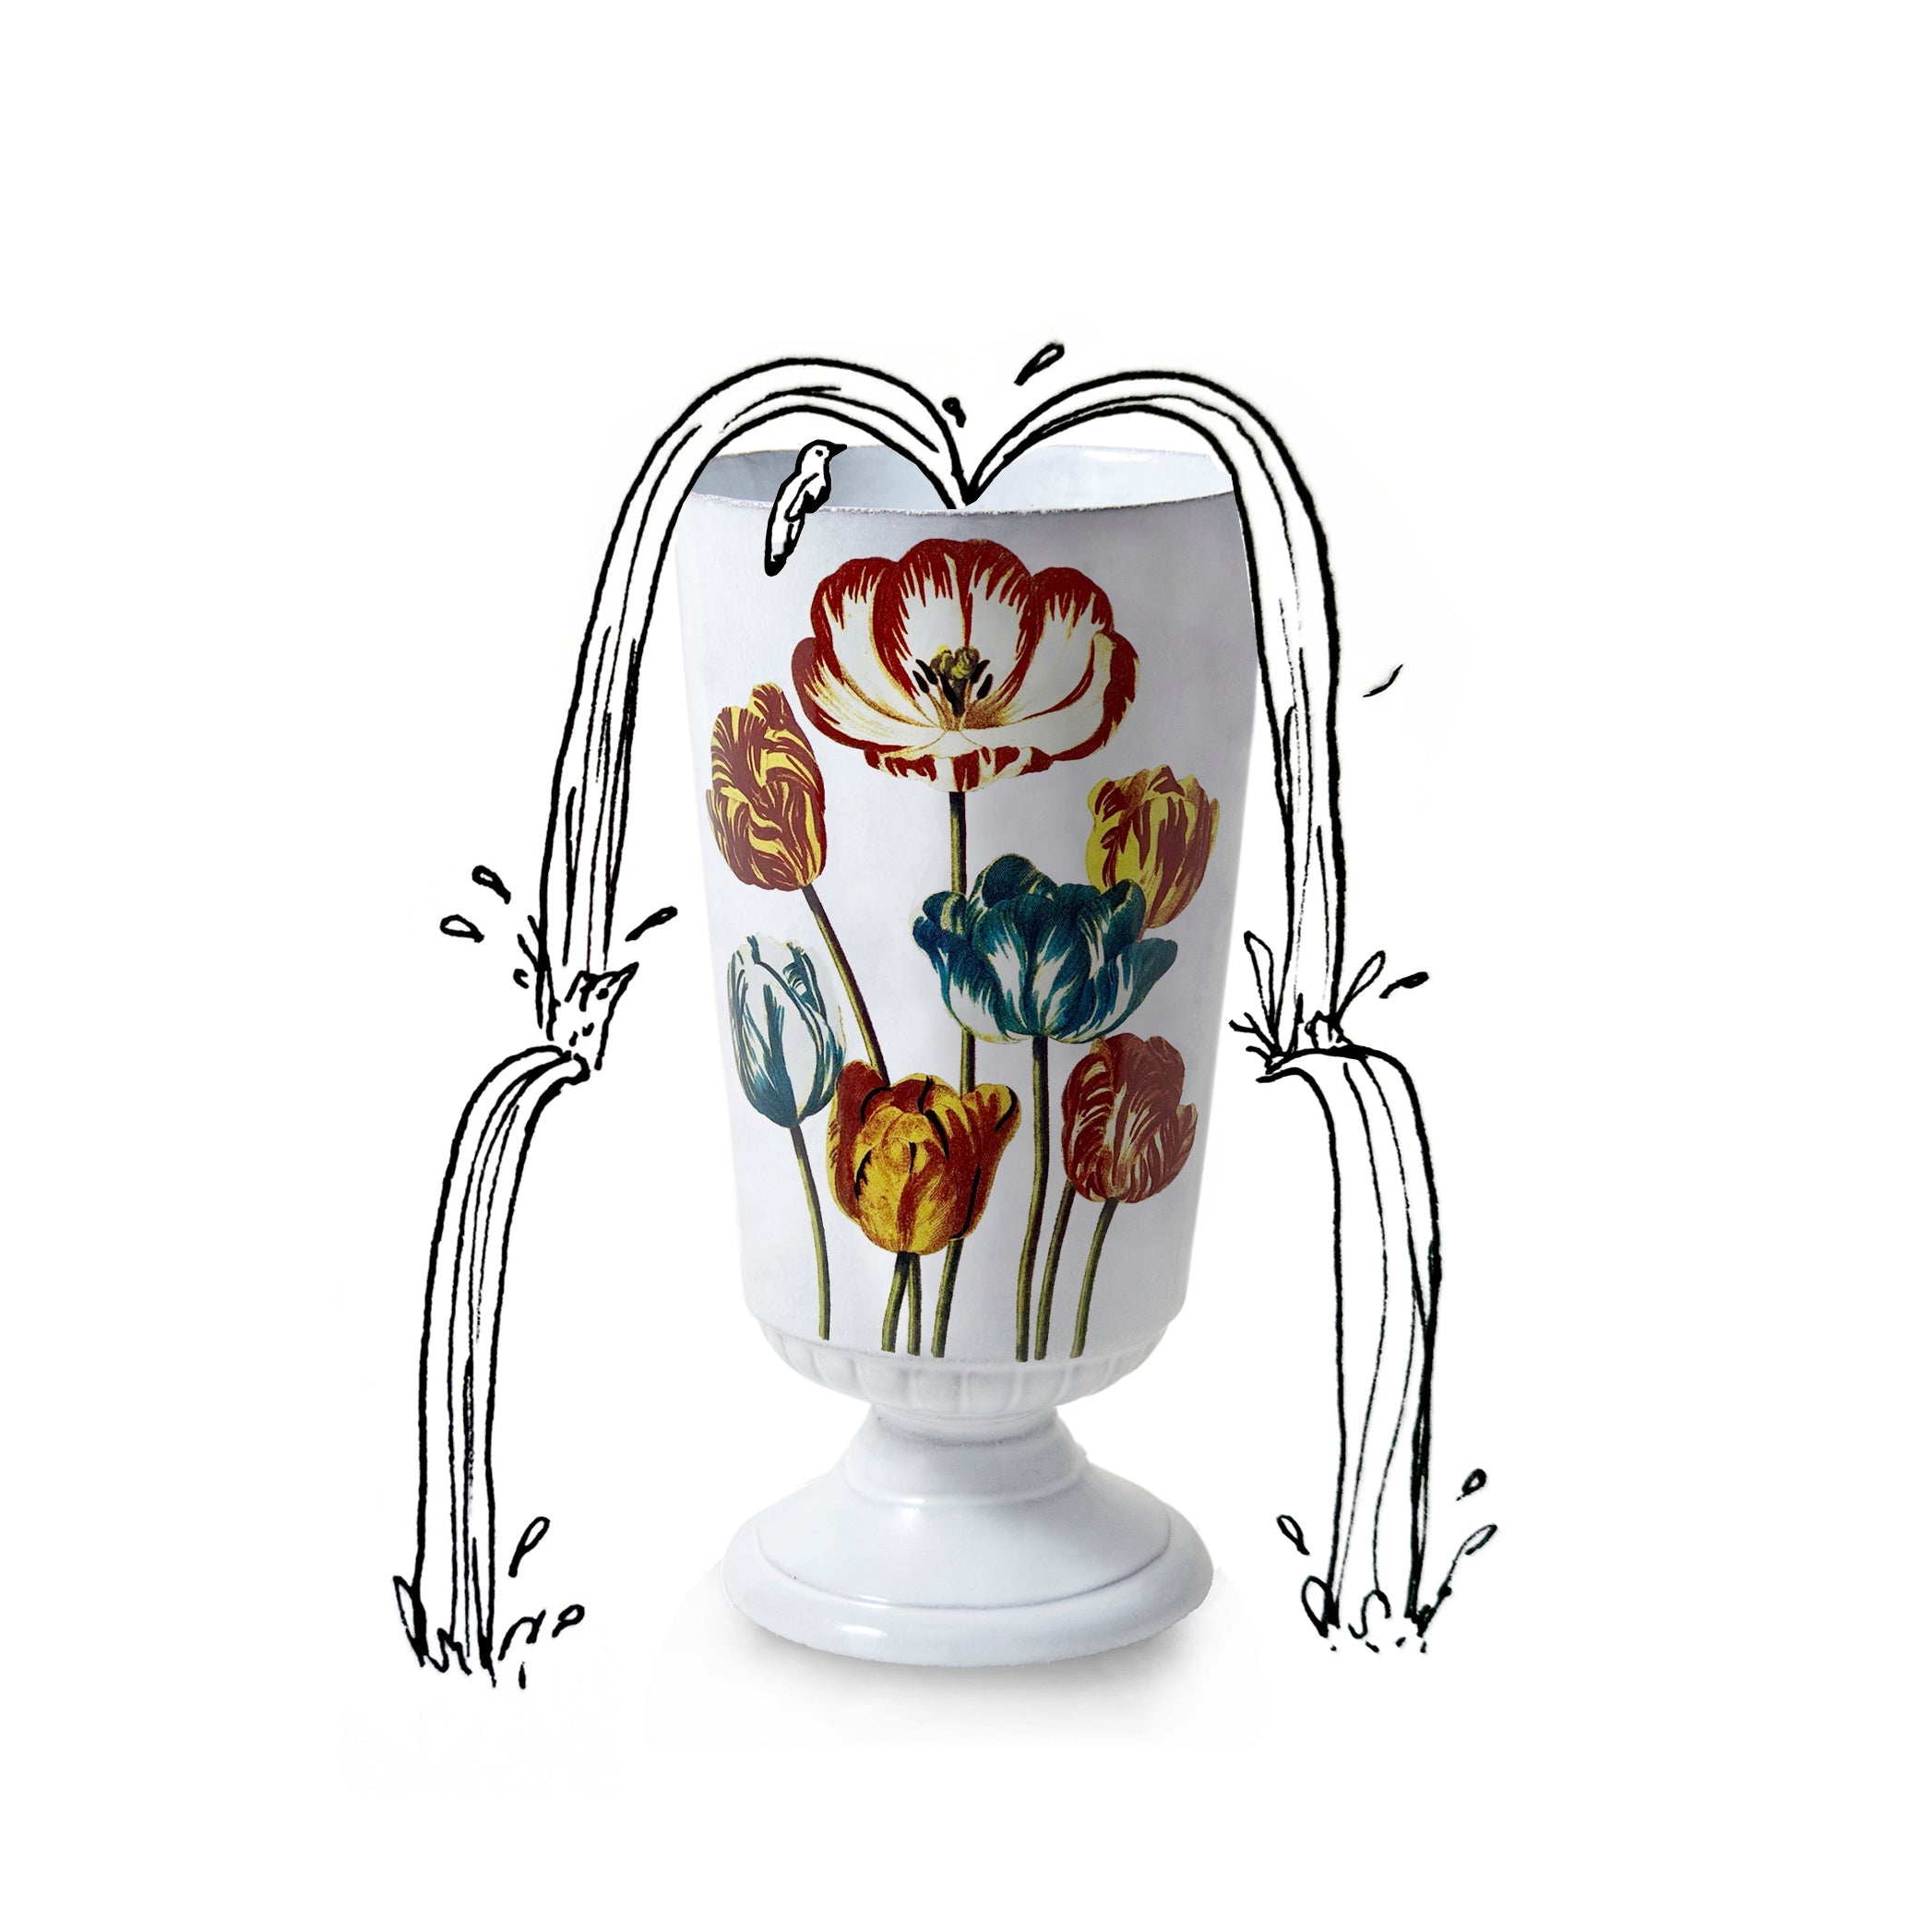 Tulip Vase by Astier de Villatte, 33cm